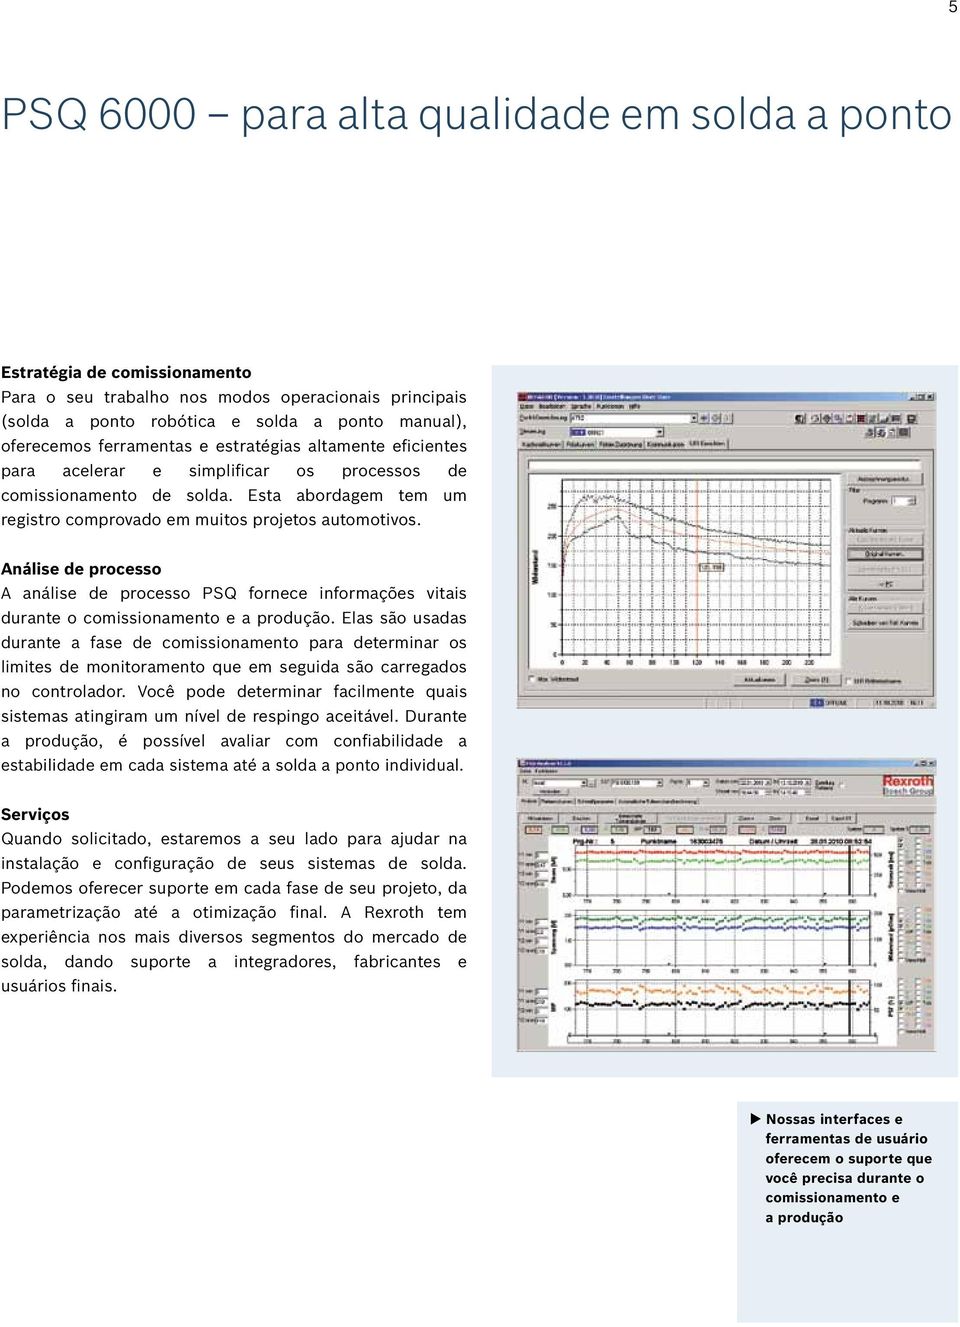 Análise de processo A análise de processo PSQ fornece informações vitais durante o comissionamento e a produção.